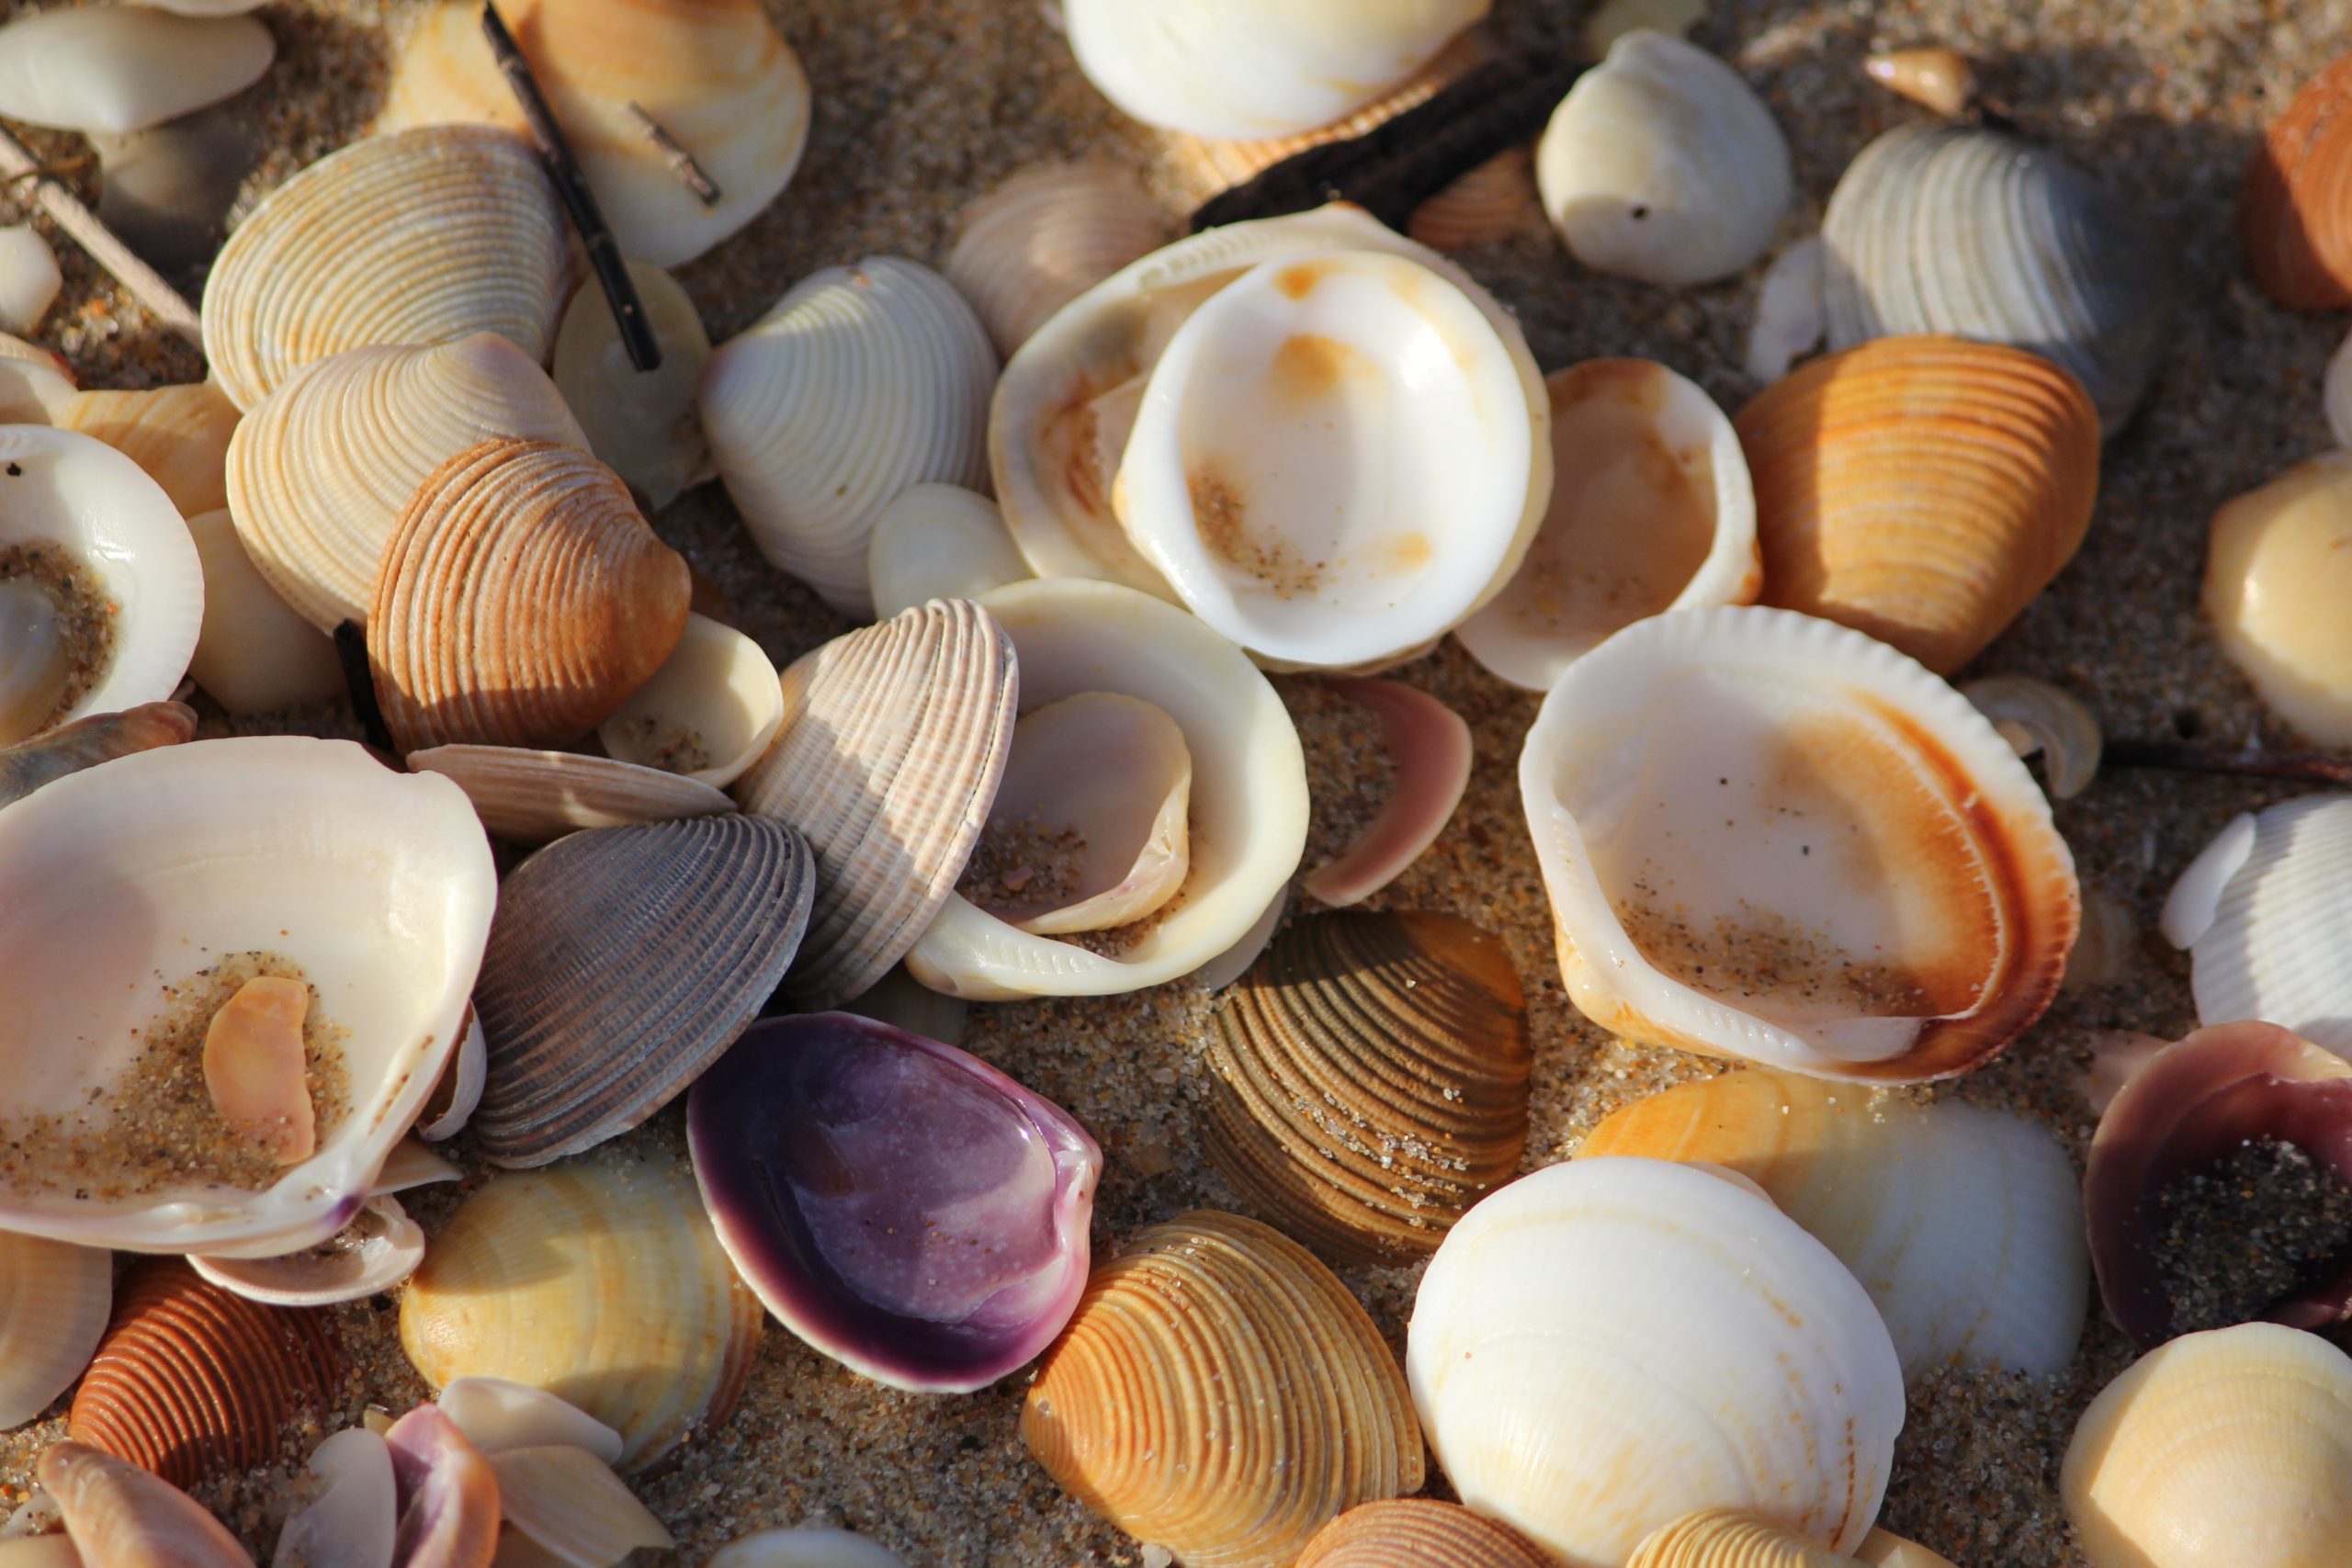 shells on beach mandy henry 2Jjx btuiMY unsplash scaled